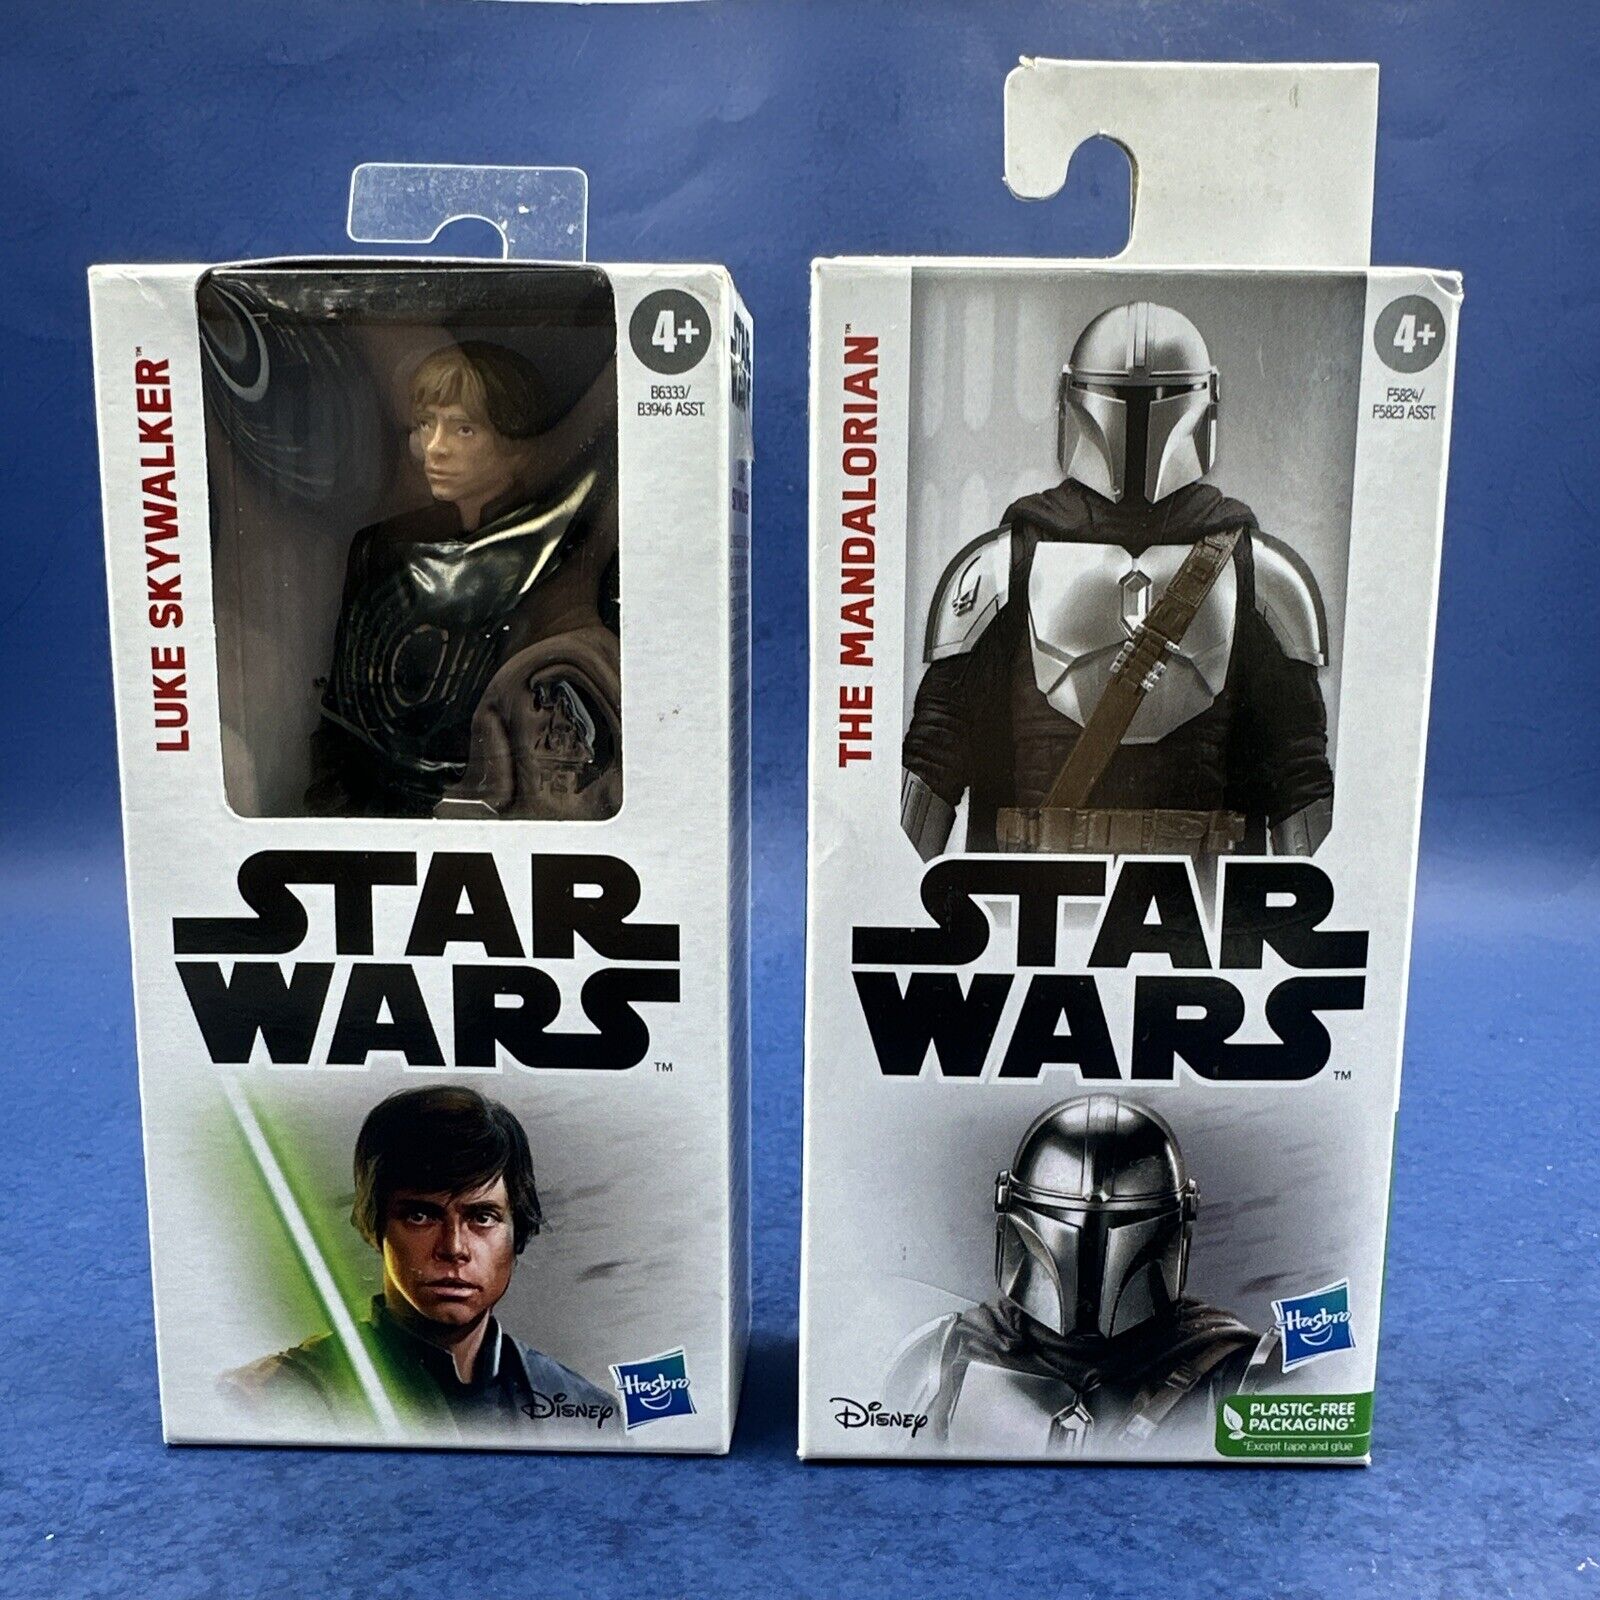 Star Wars Action Figure -Luke Skywalker - Hasbro Disney Open Box Fast Shipping